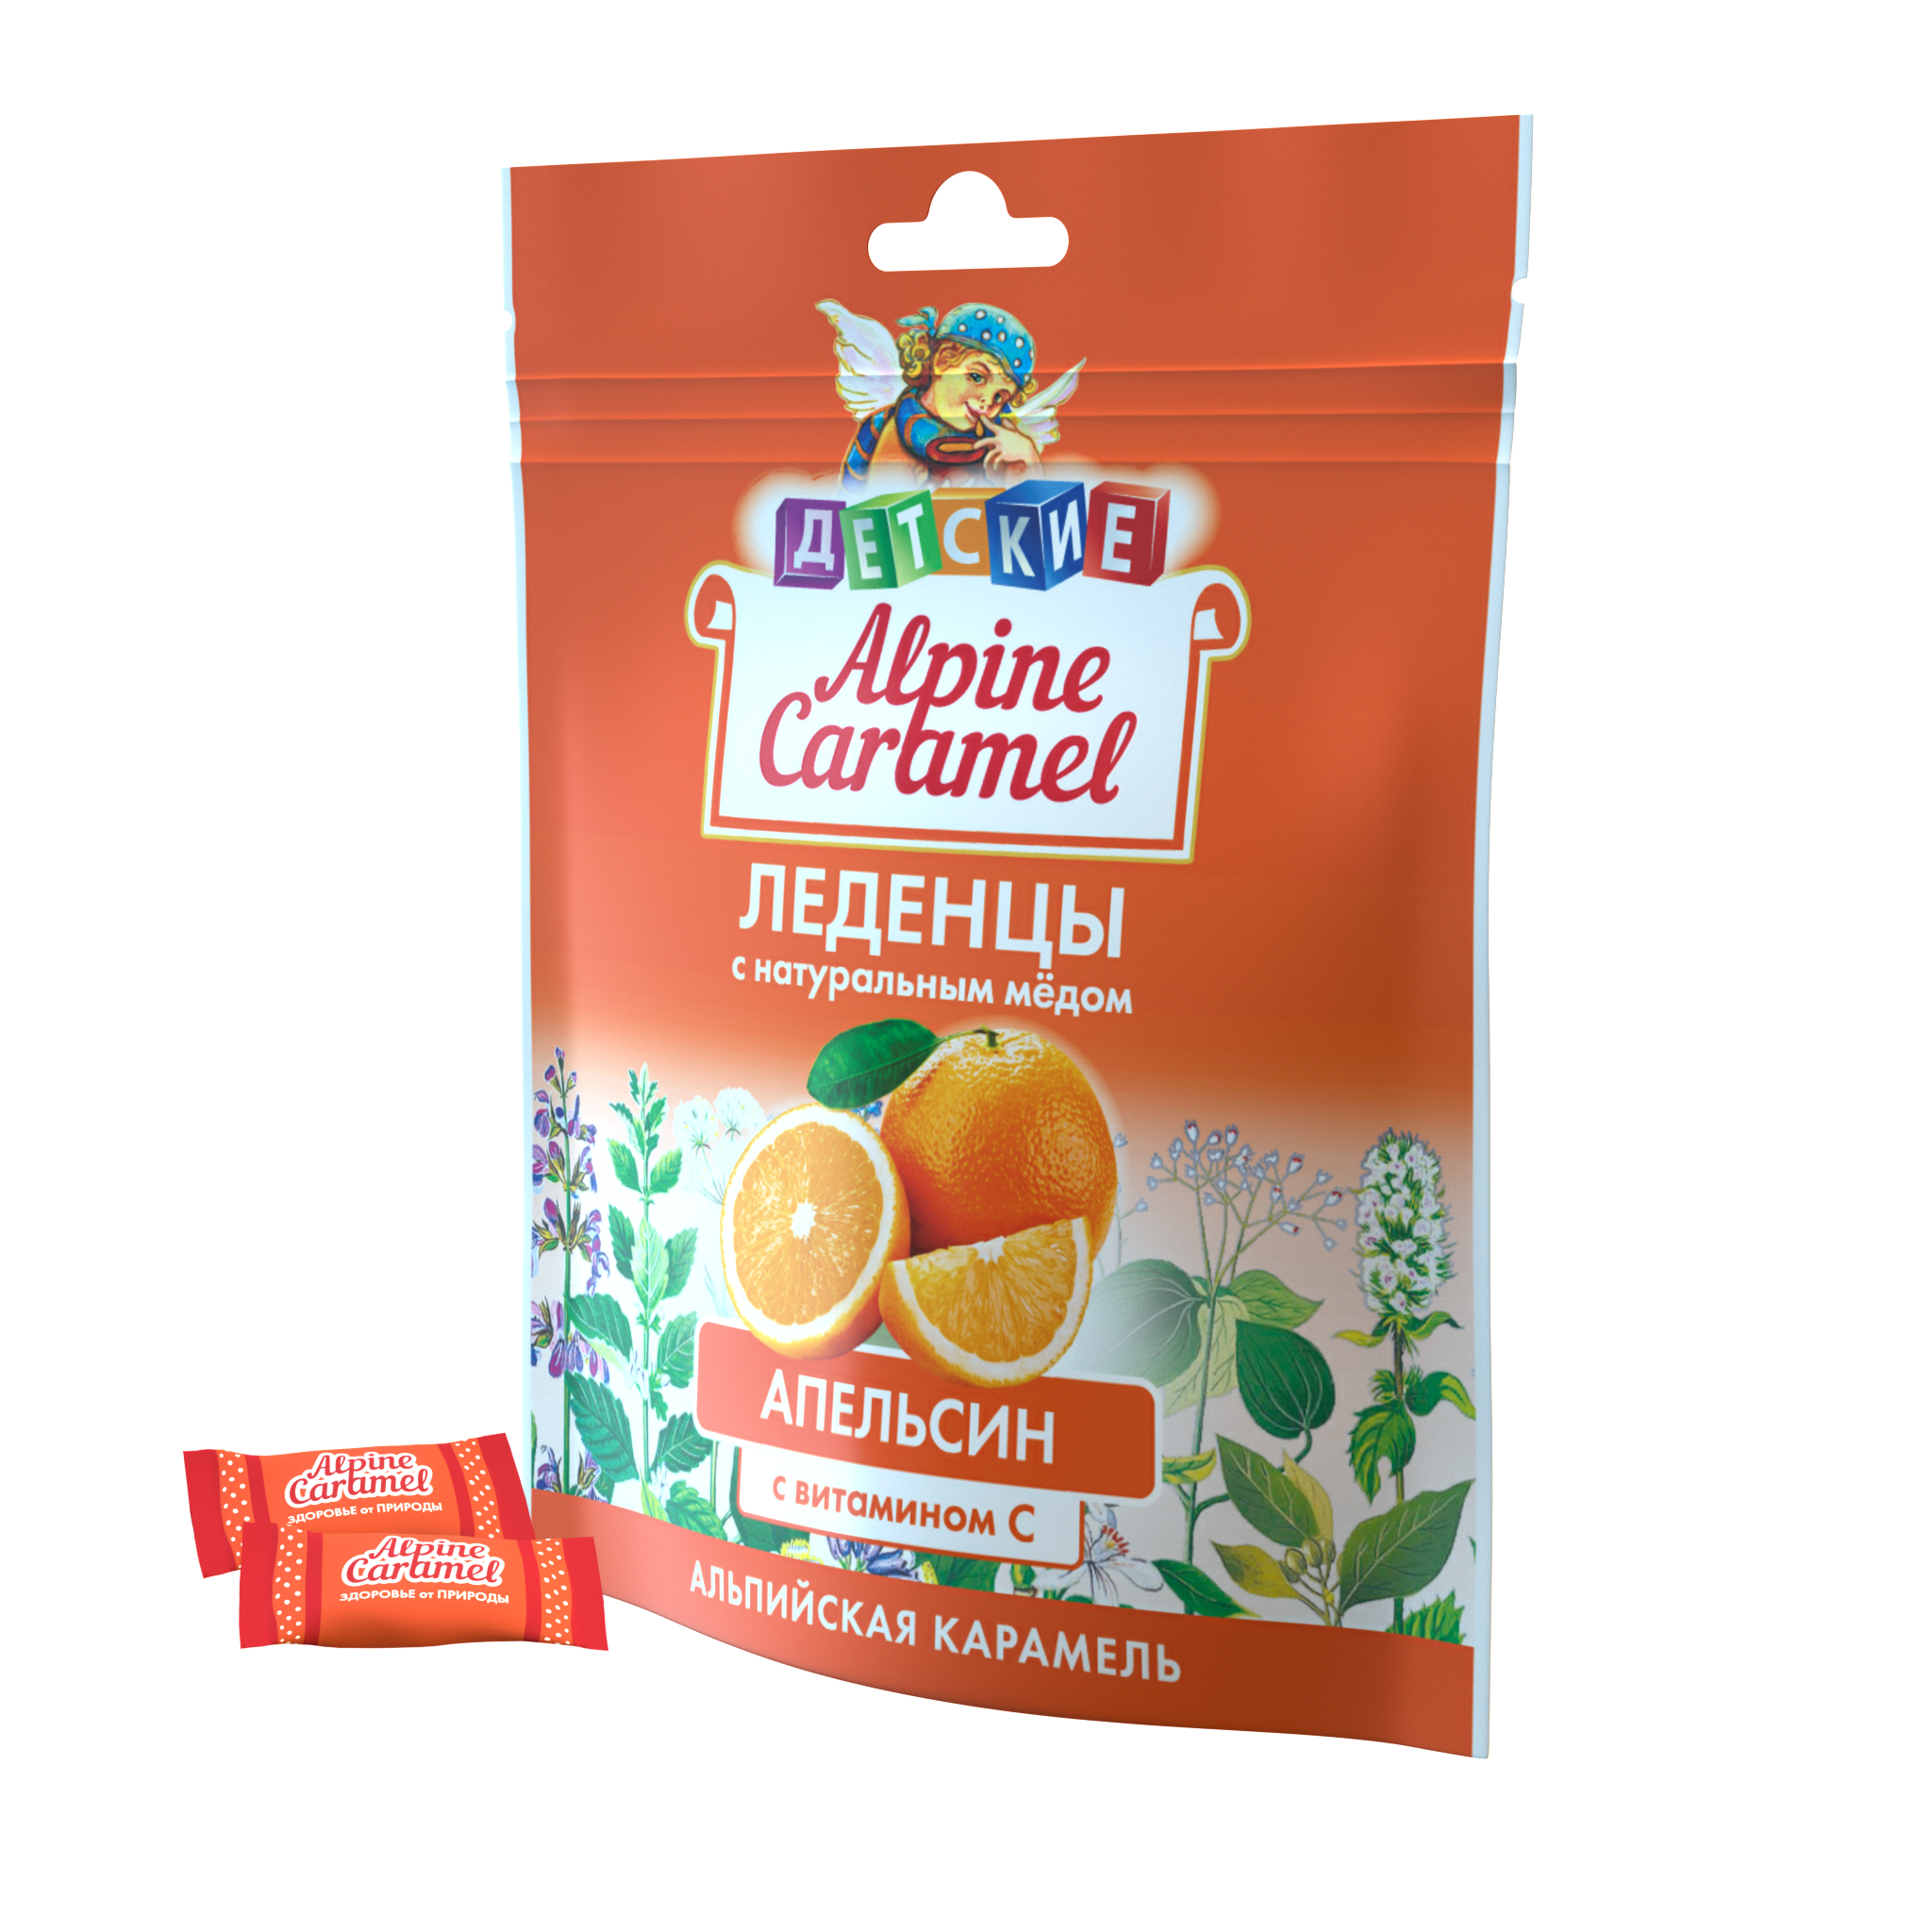 Alpine Caramel Альпийская Карамель леденцы дет (апельсин с медом и витамином С), 75 г кармолис леденцы детские с медом и витамином с апельсин 75г